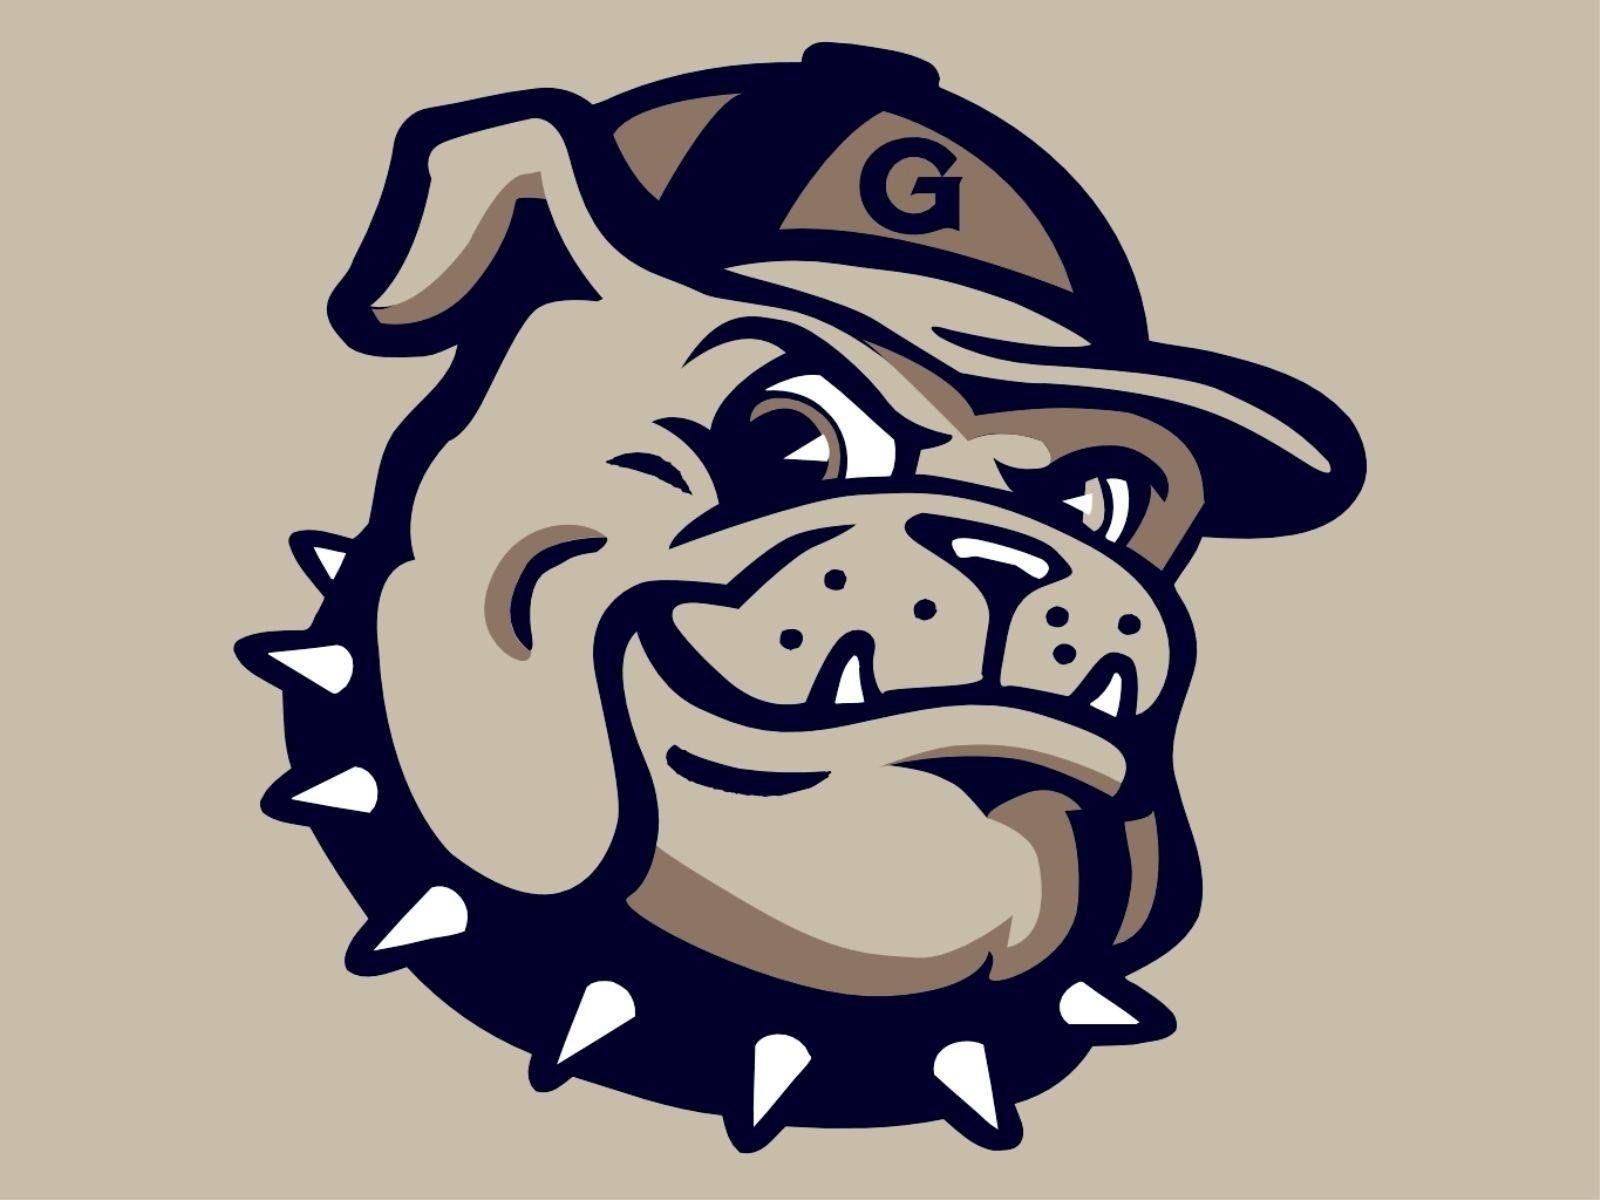 Georgetown Hoyas Men&Basketball Logo Wallpapers